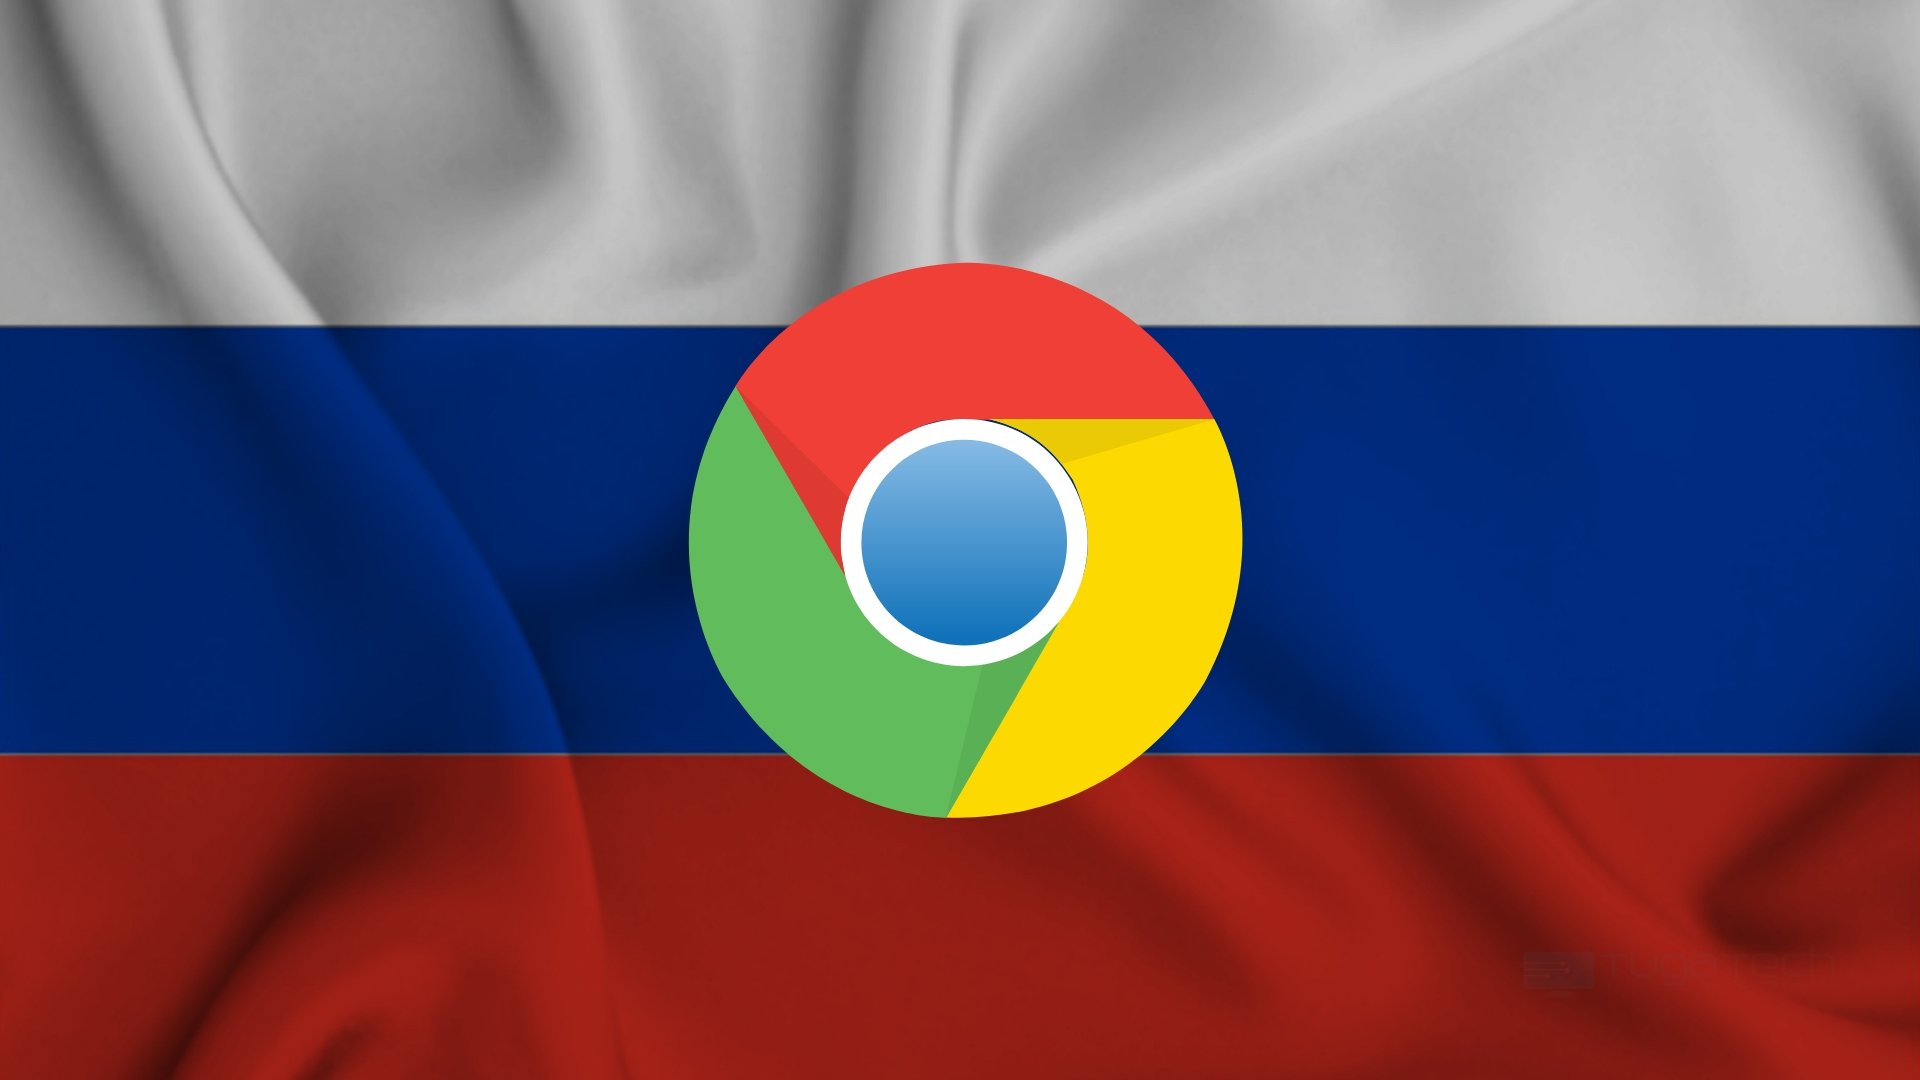 Bandeira da Rússia com o logo do Chrome